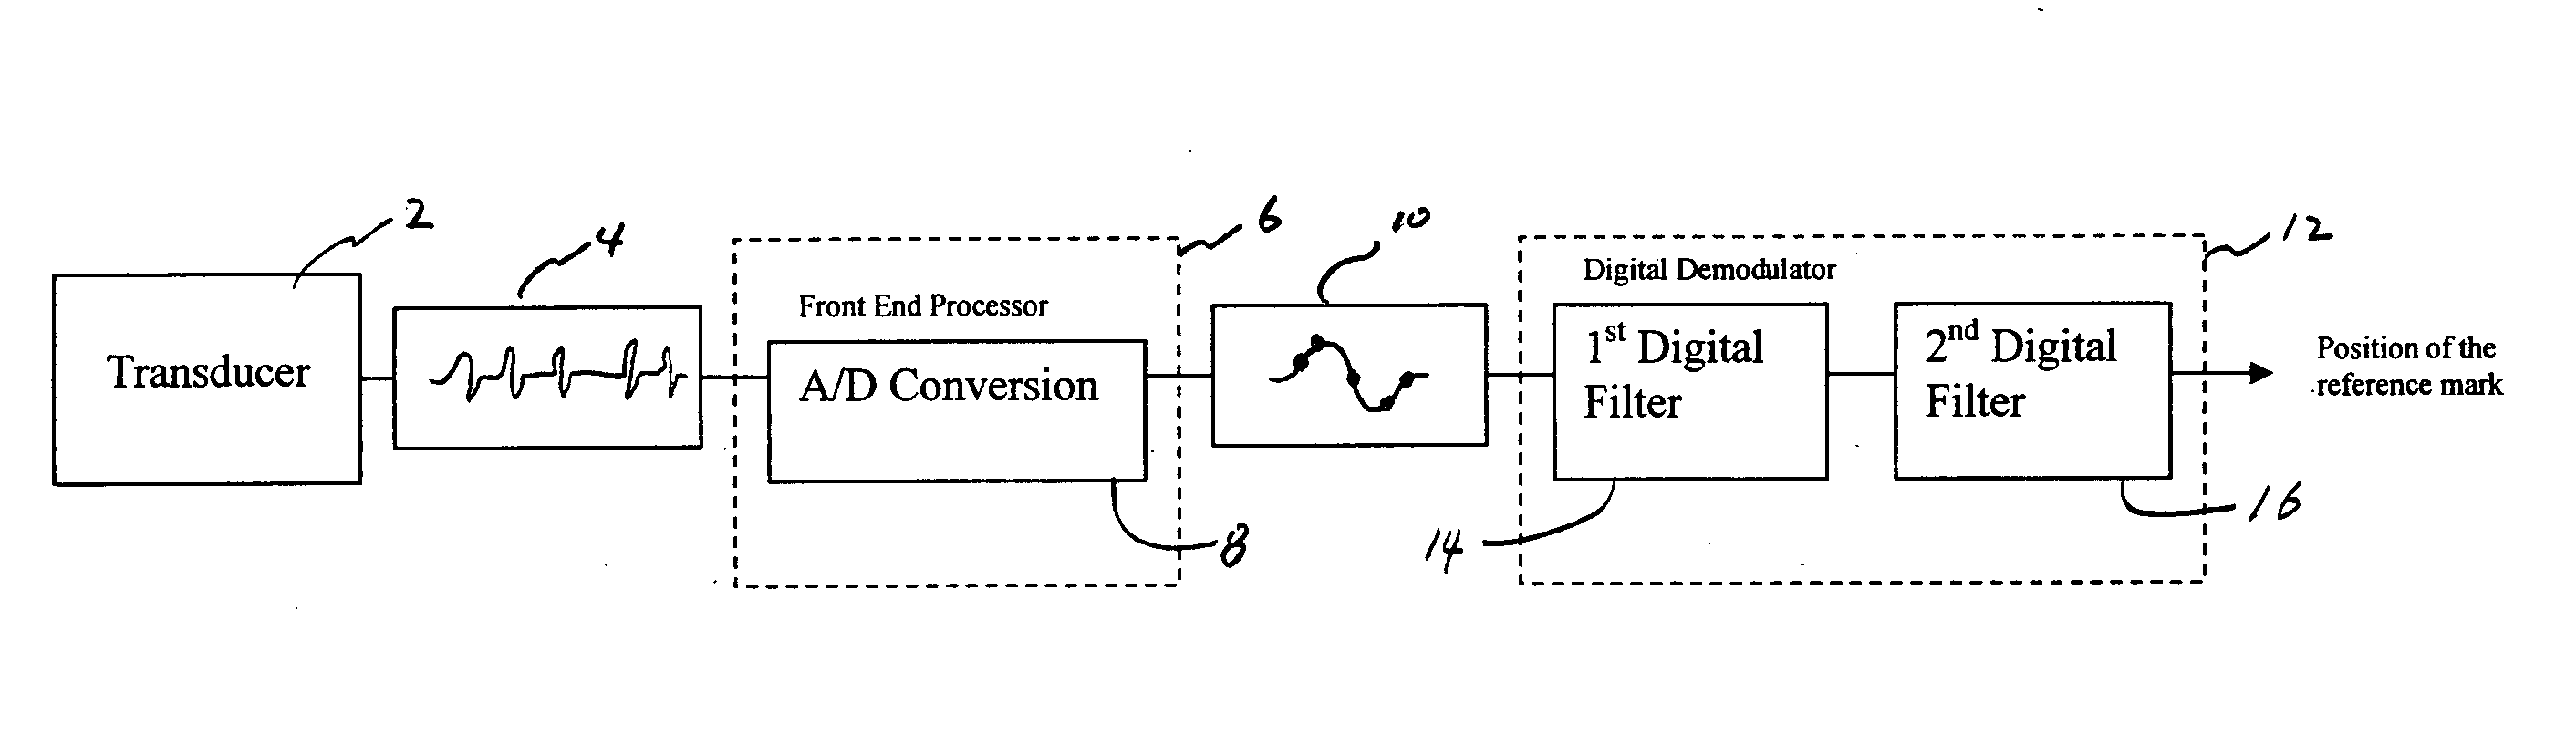 PRML based magnetic servo position demodulator